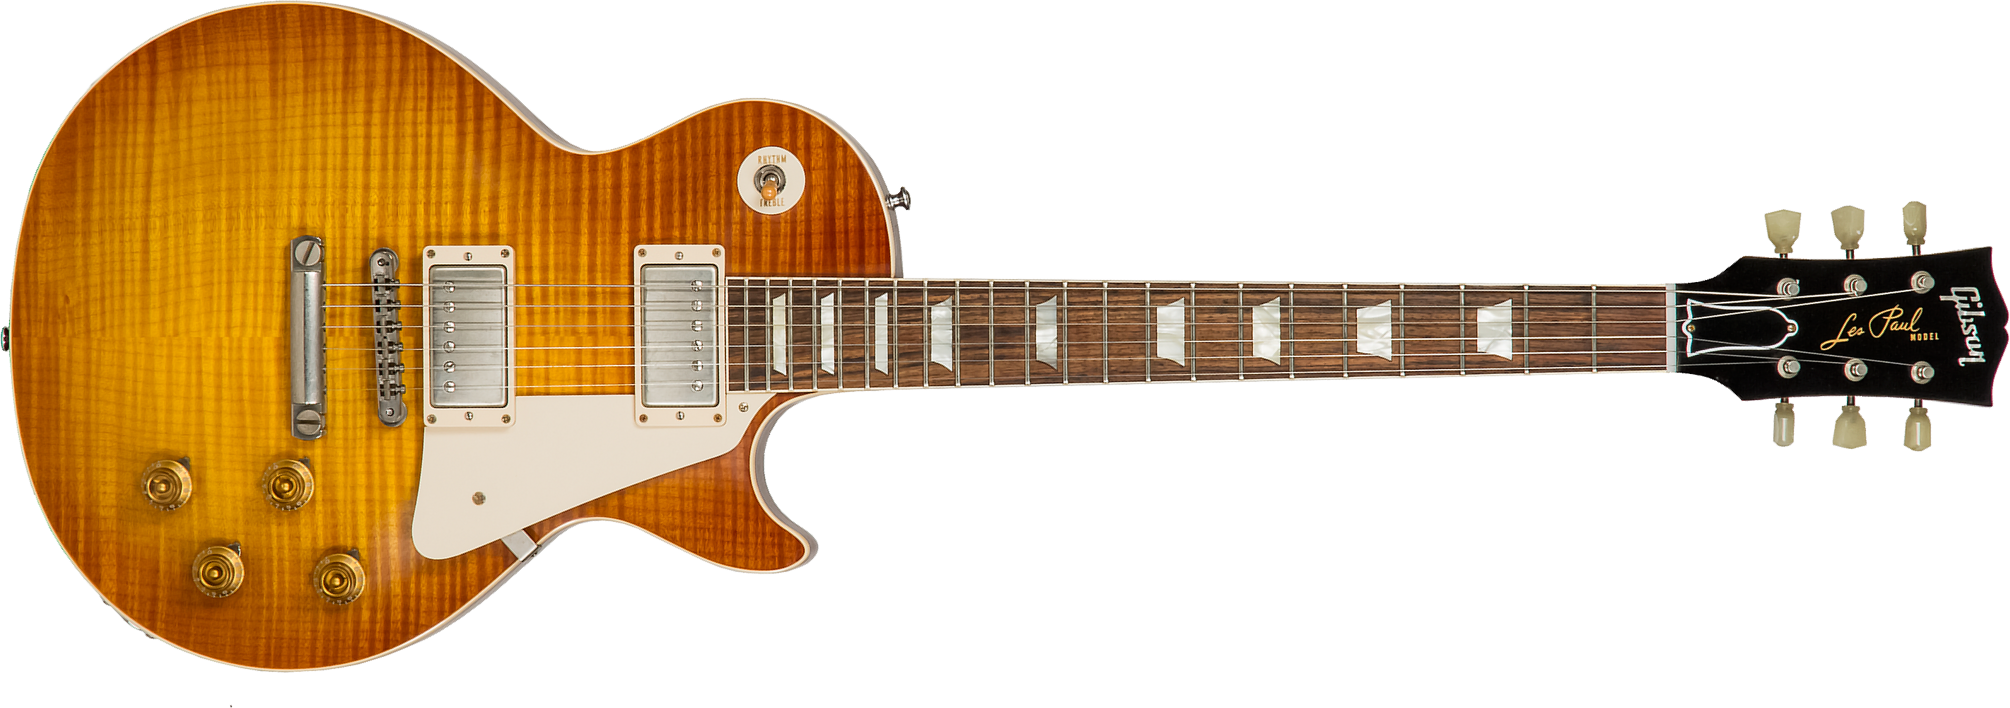 Gibson Custom Shop M2m Les Paul Standard 1959 Reissue 2h Ht Rw #943075 - Vos Iced Tea - Guitare Électrique Single Cut - Main picture